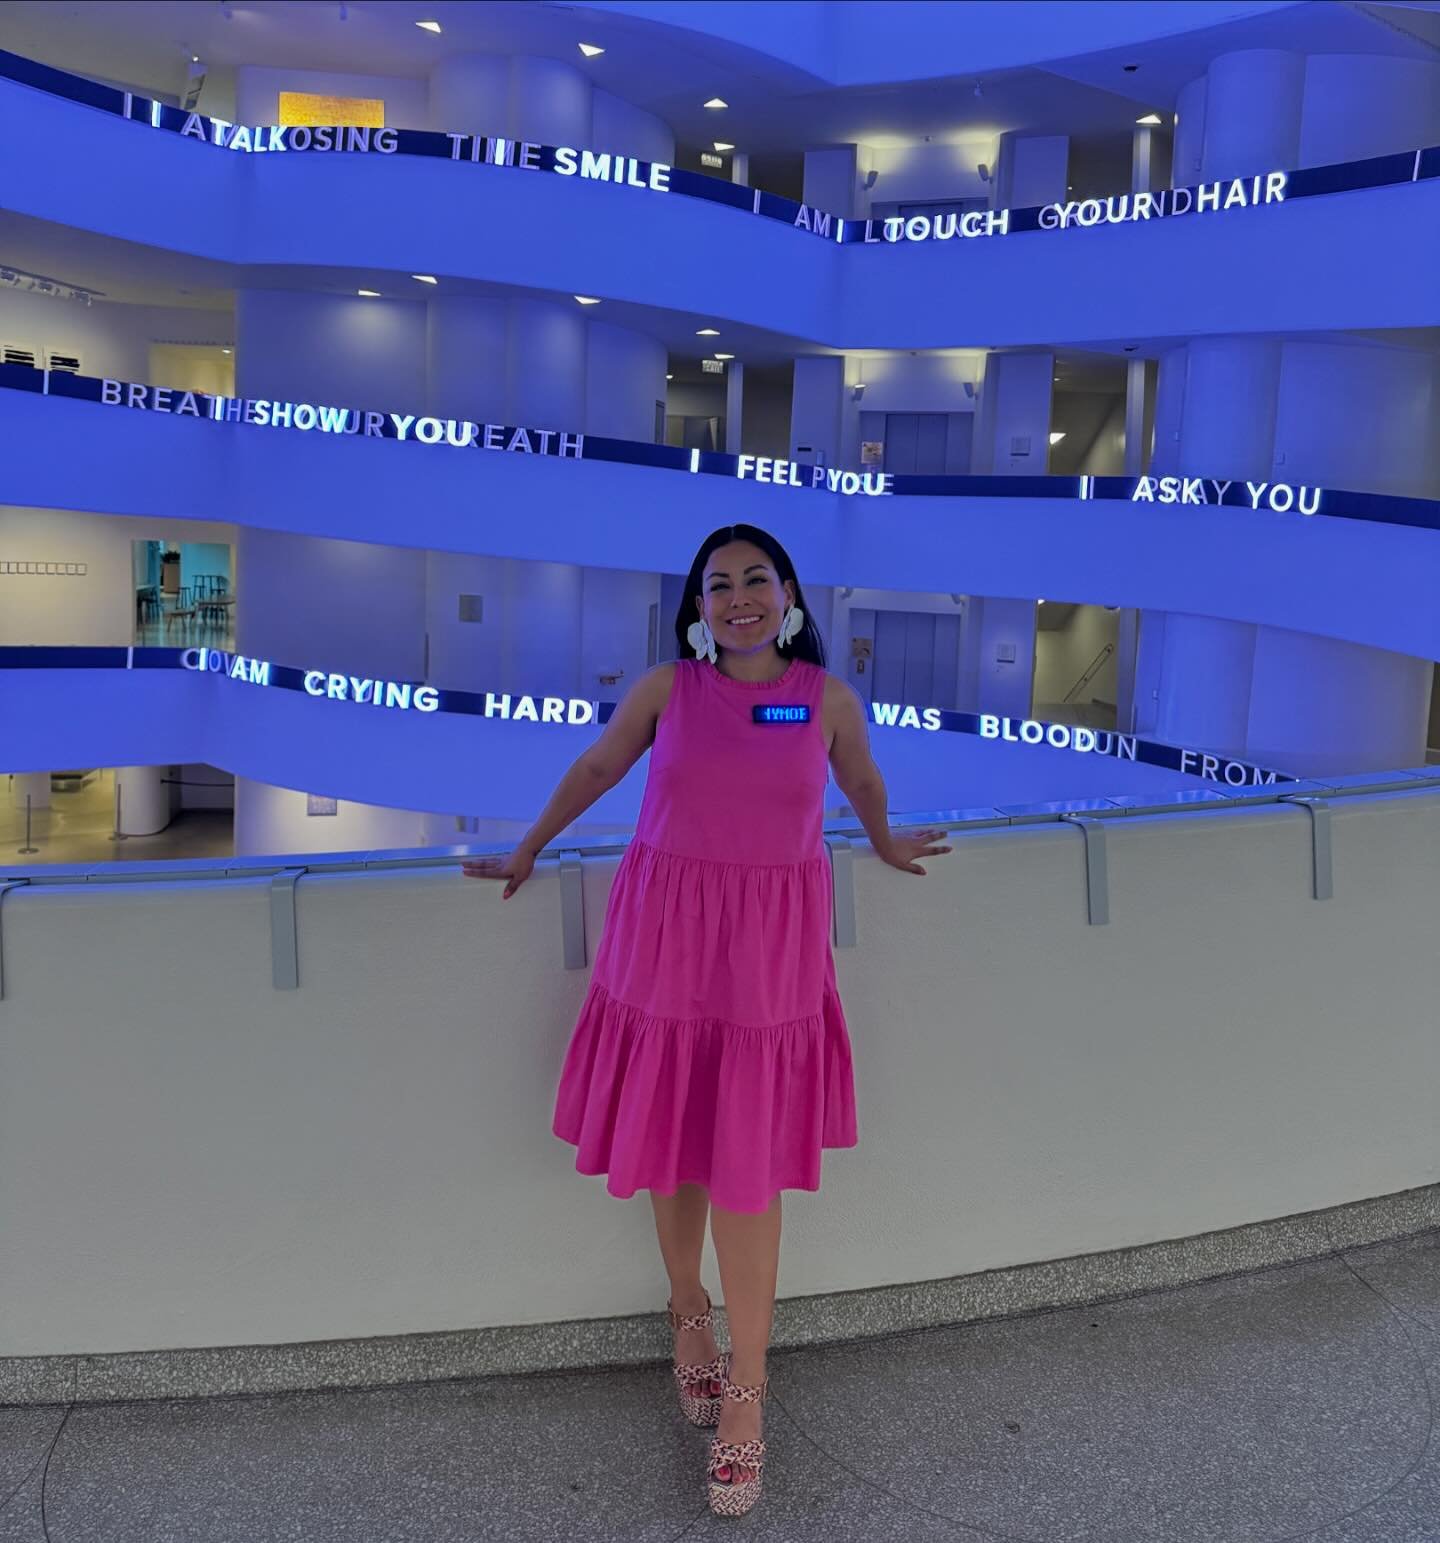 JENNY HOLZER: LIGHT LINE ✨ PART II
__

1️⃣ &ldquo;Jenny Holzer: Light Line&rdquo; Opening Reception

2️⃣ Ladies and Gentlemen, her: @jennyholzerstudio 

3️⃣ Selfies with @dulcinaabreu and the icon @leequinones 

4️⃣ Latinx at the Guggenheim! @leequin